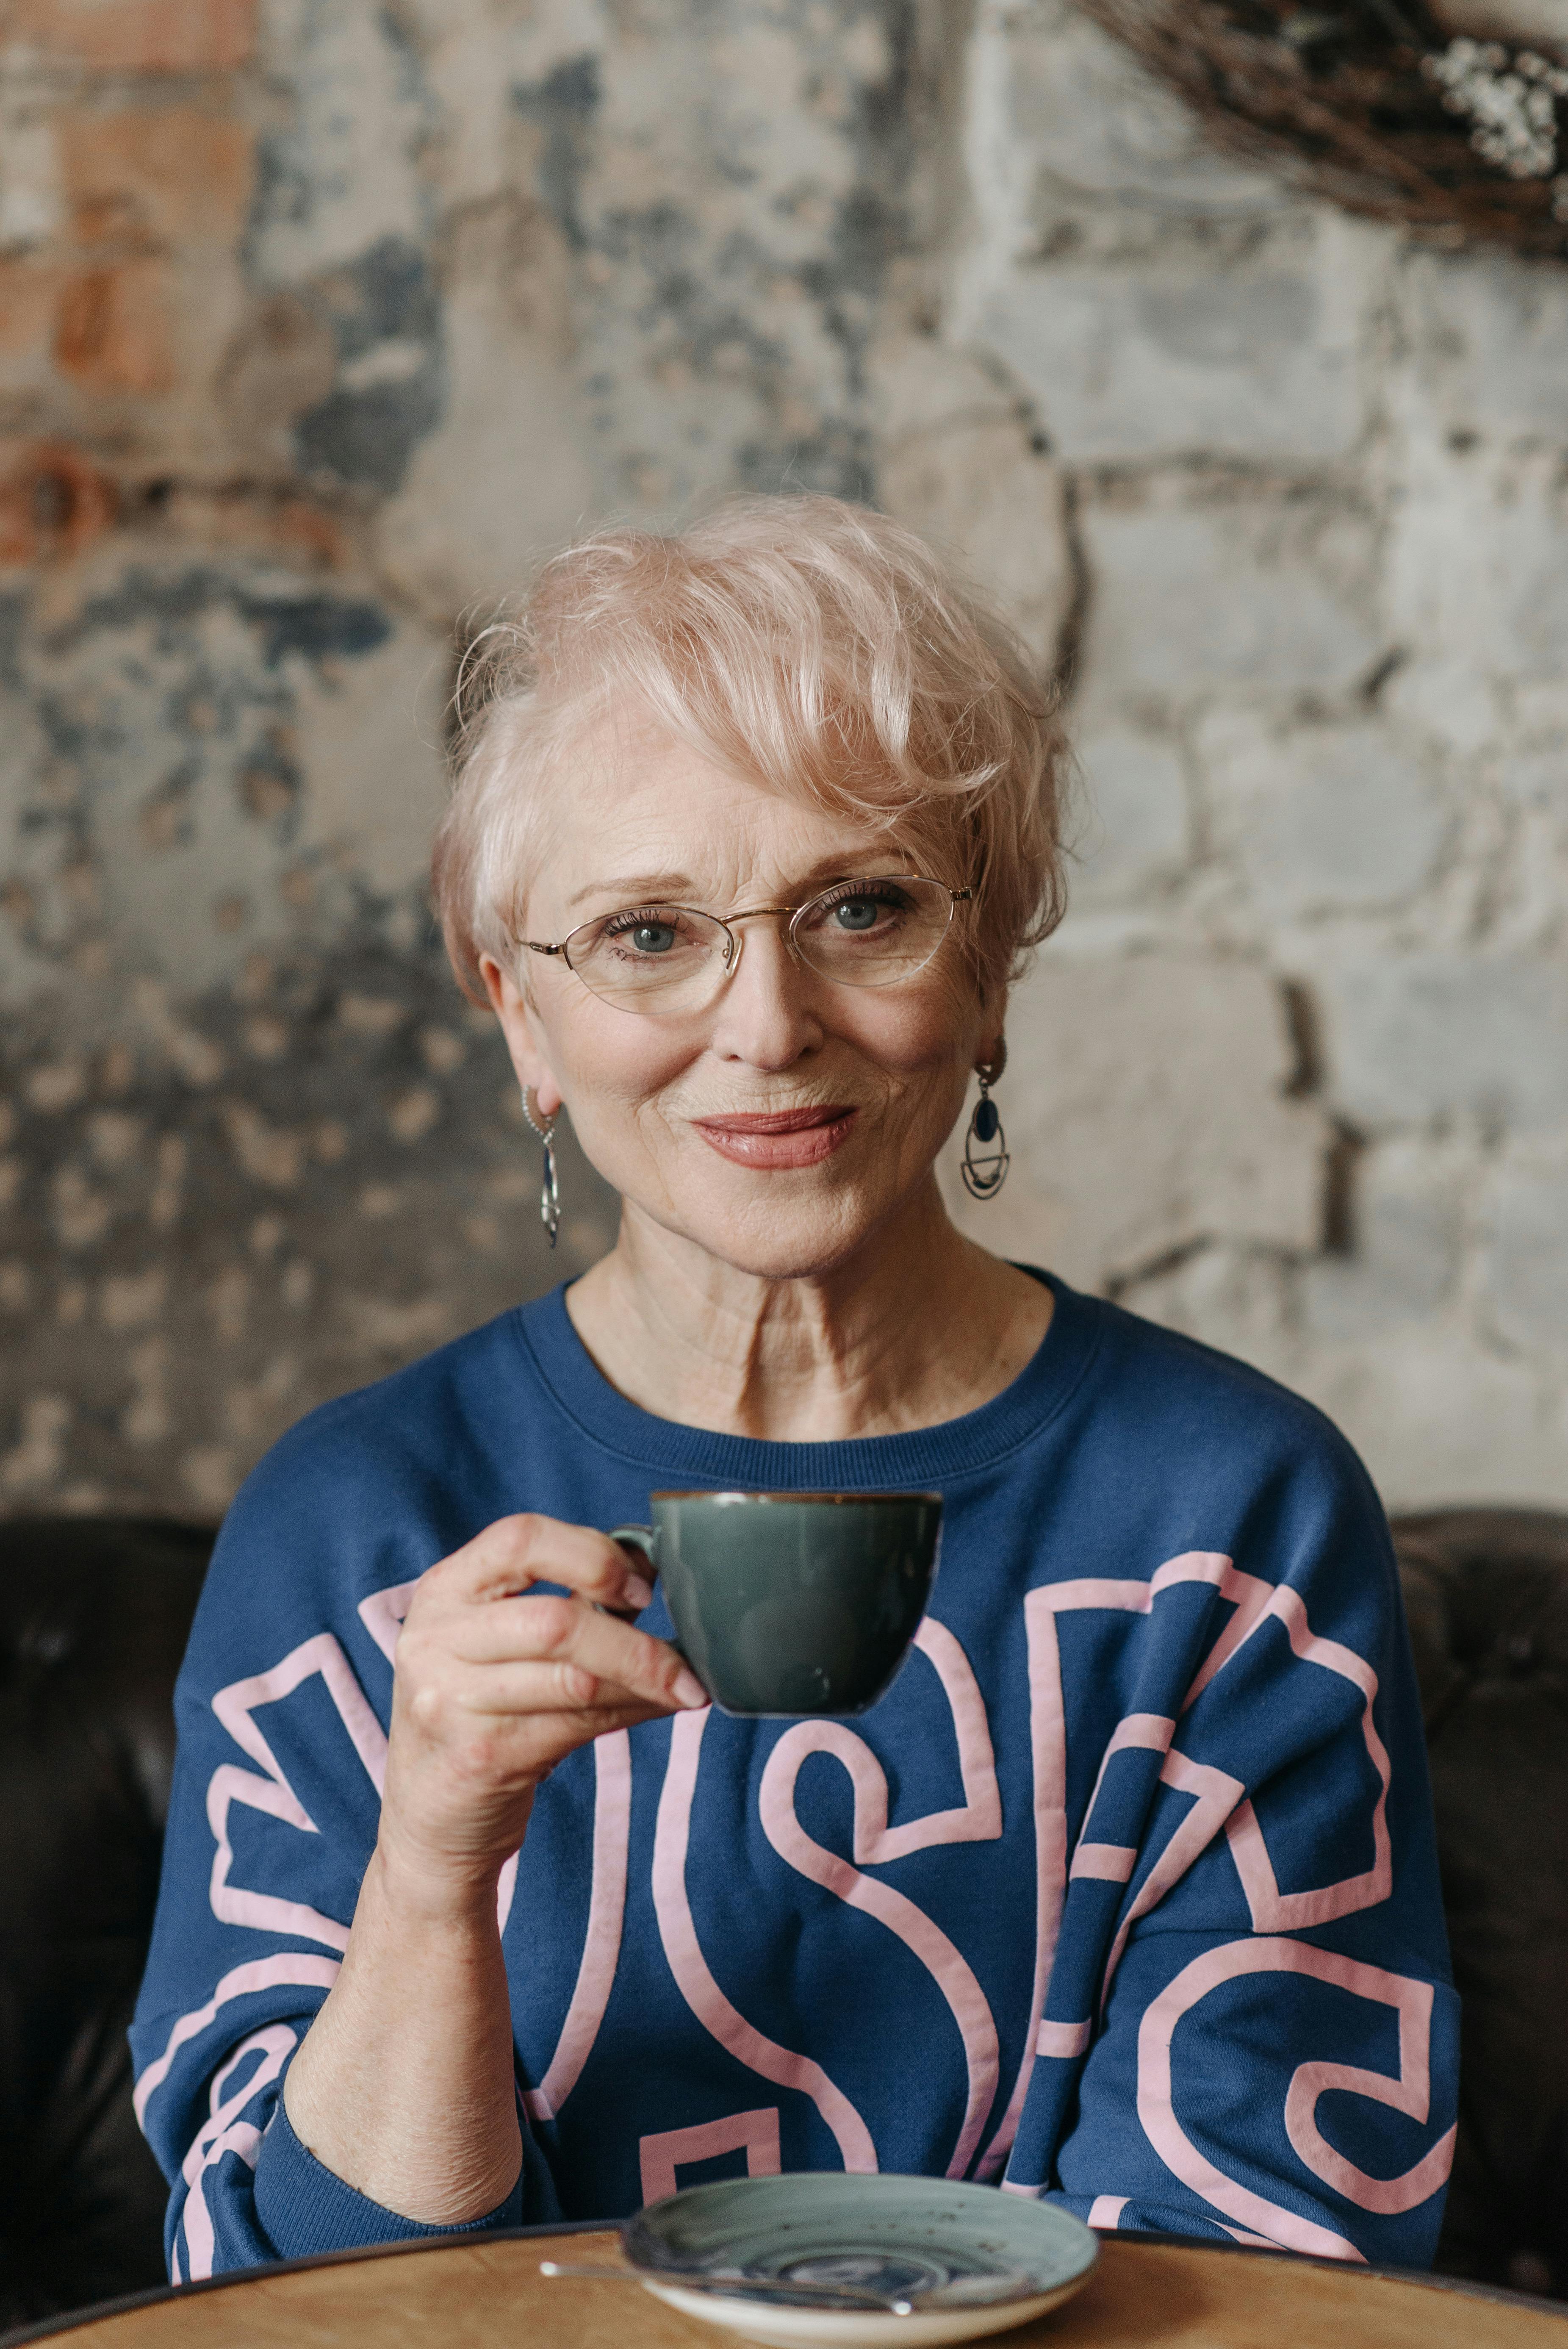 Una anciana sonriente con una taza en la mano | Fuente: Pexels